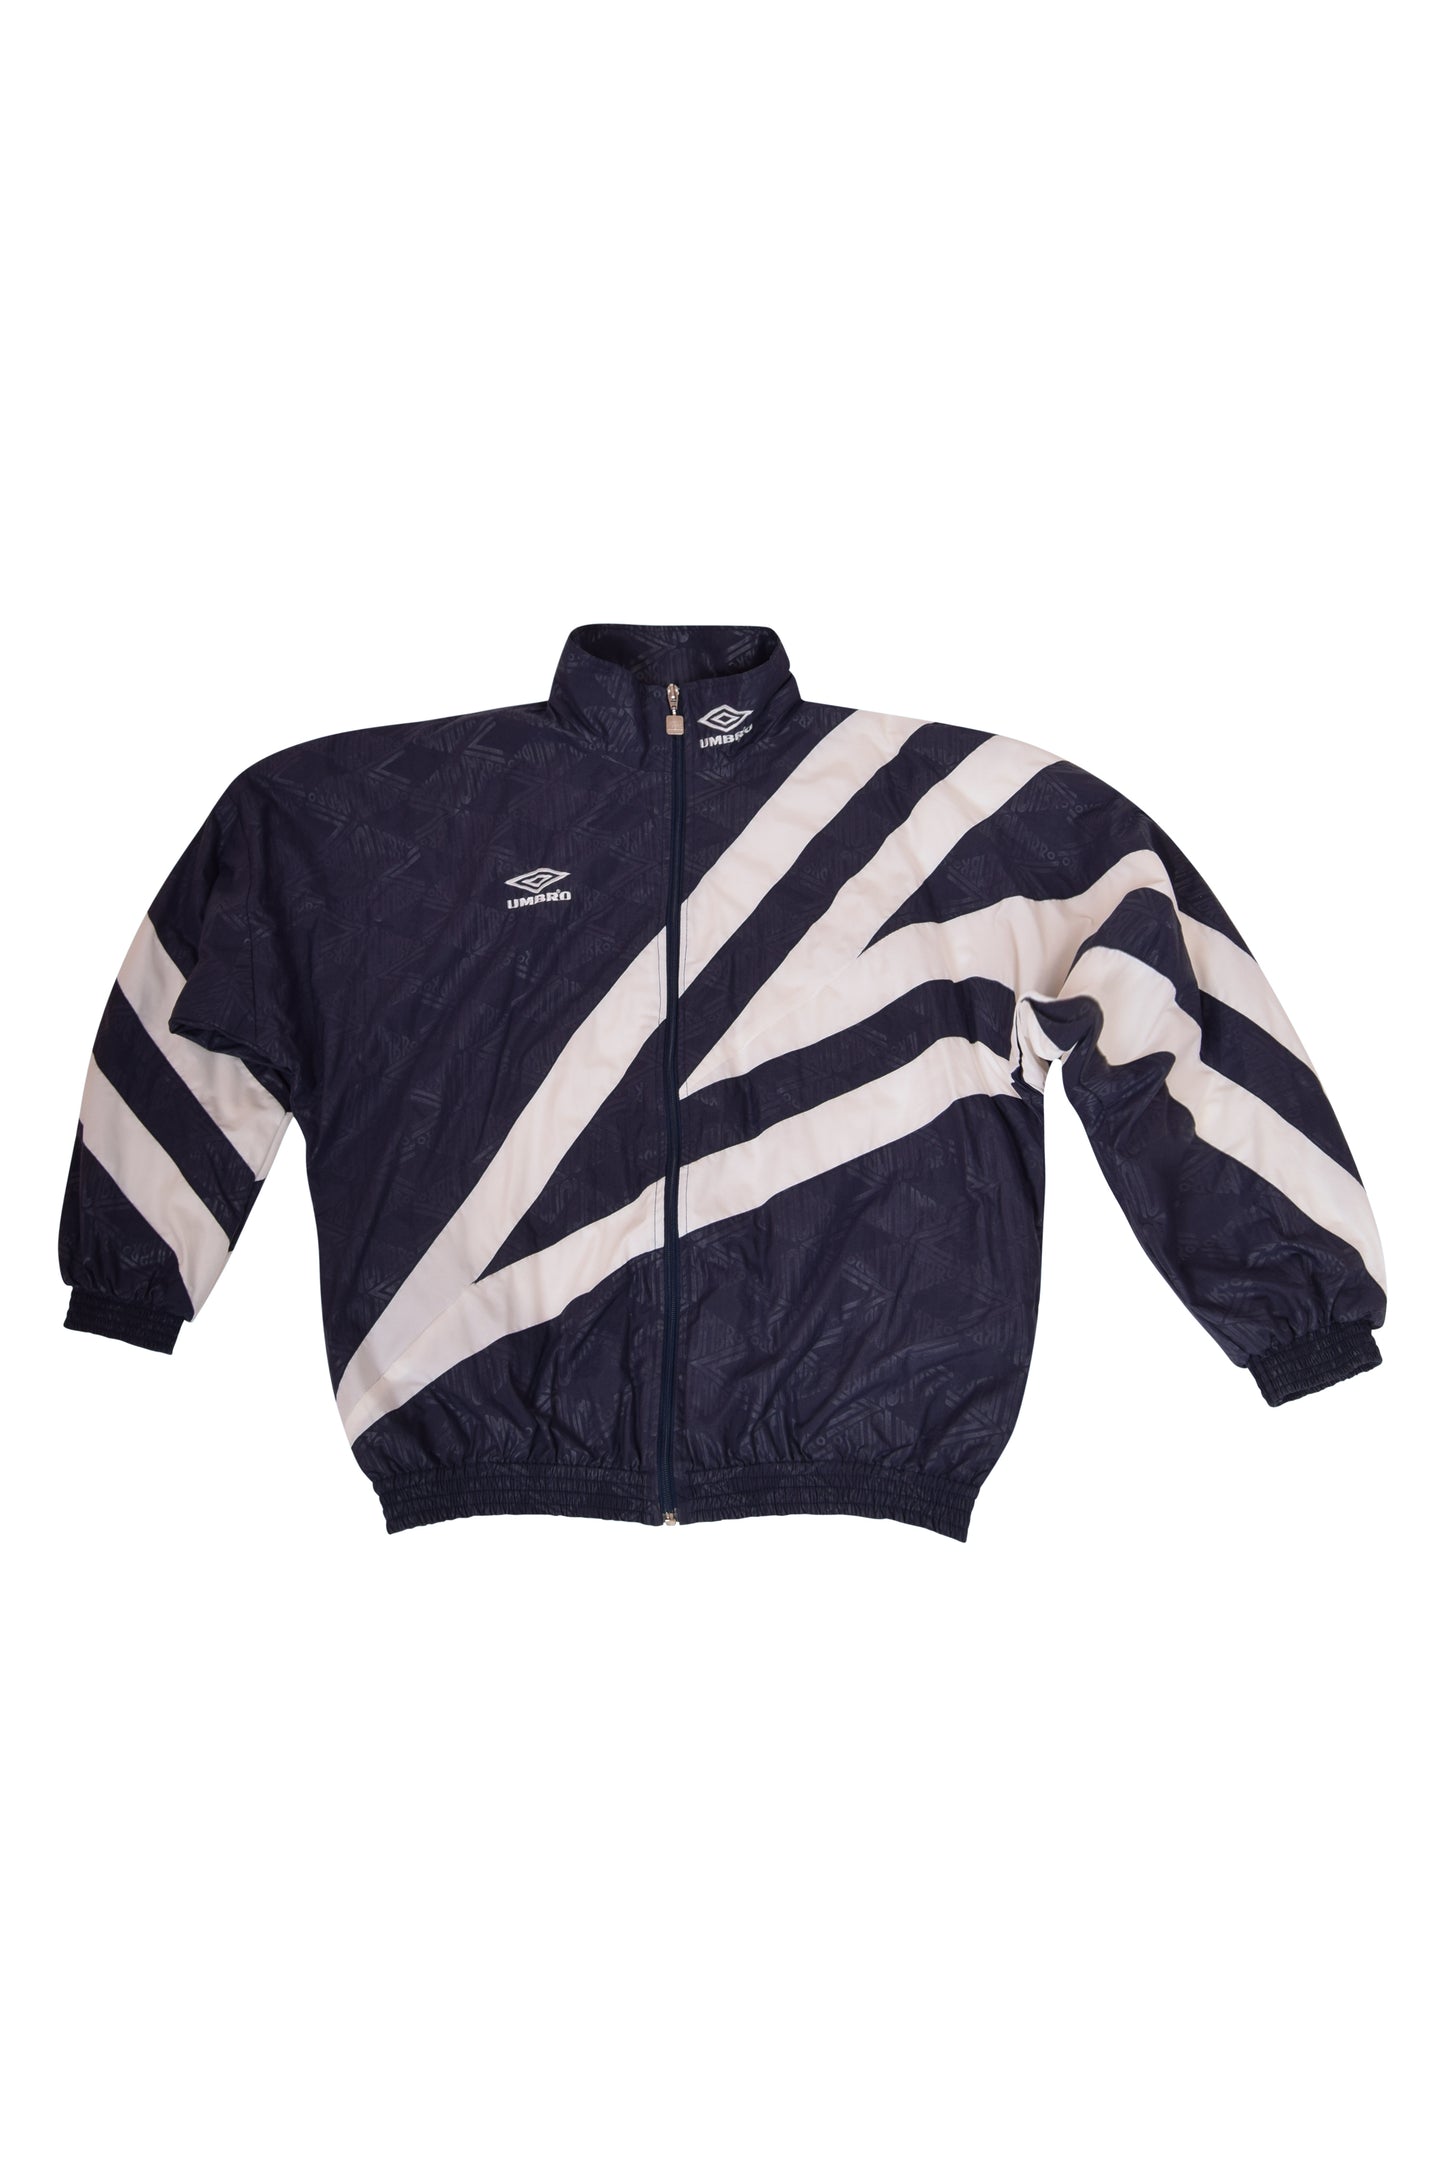 Vintage Umbro Jacket / Shell 90's Size M